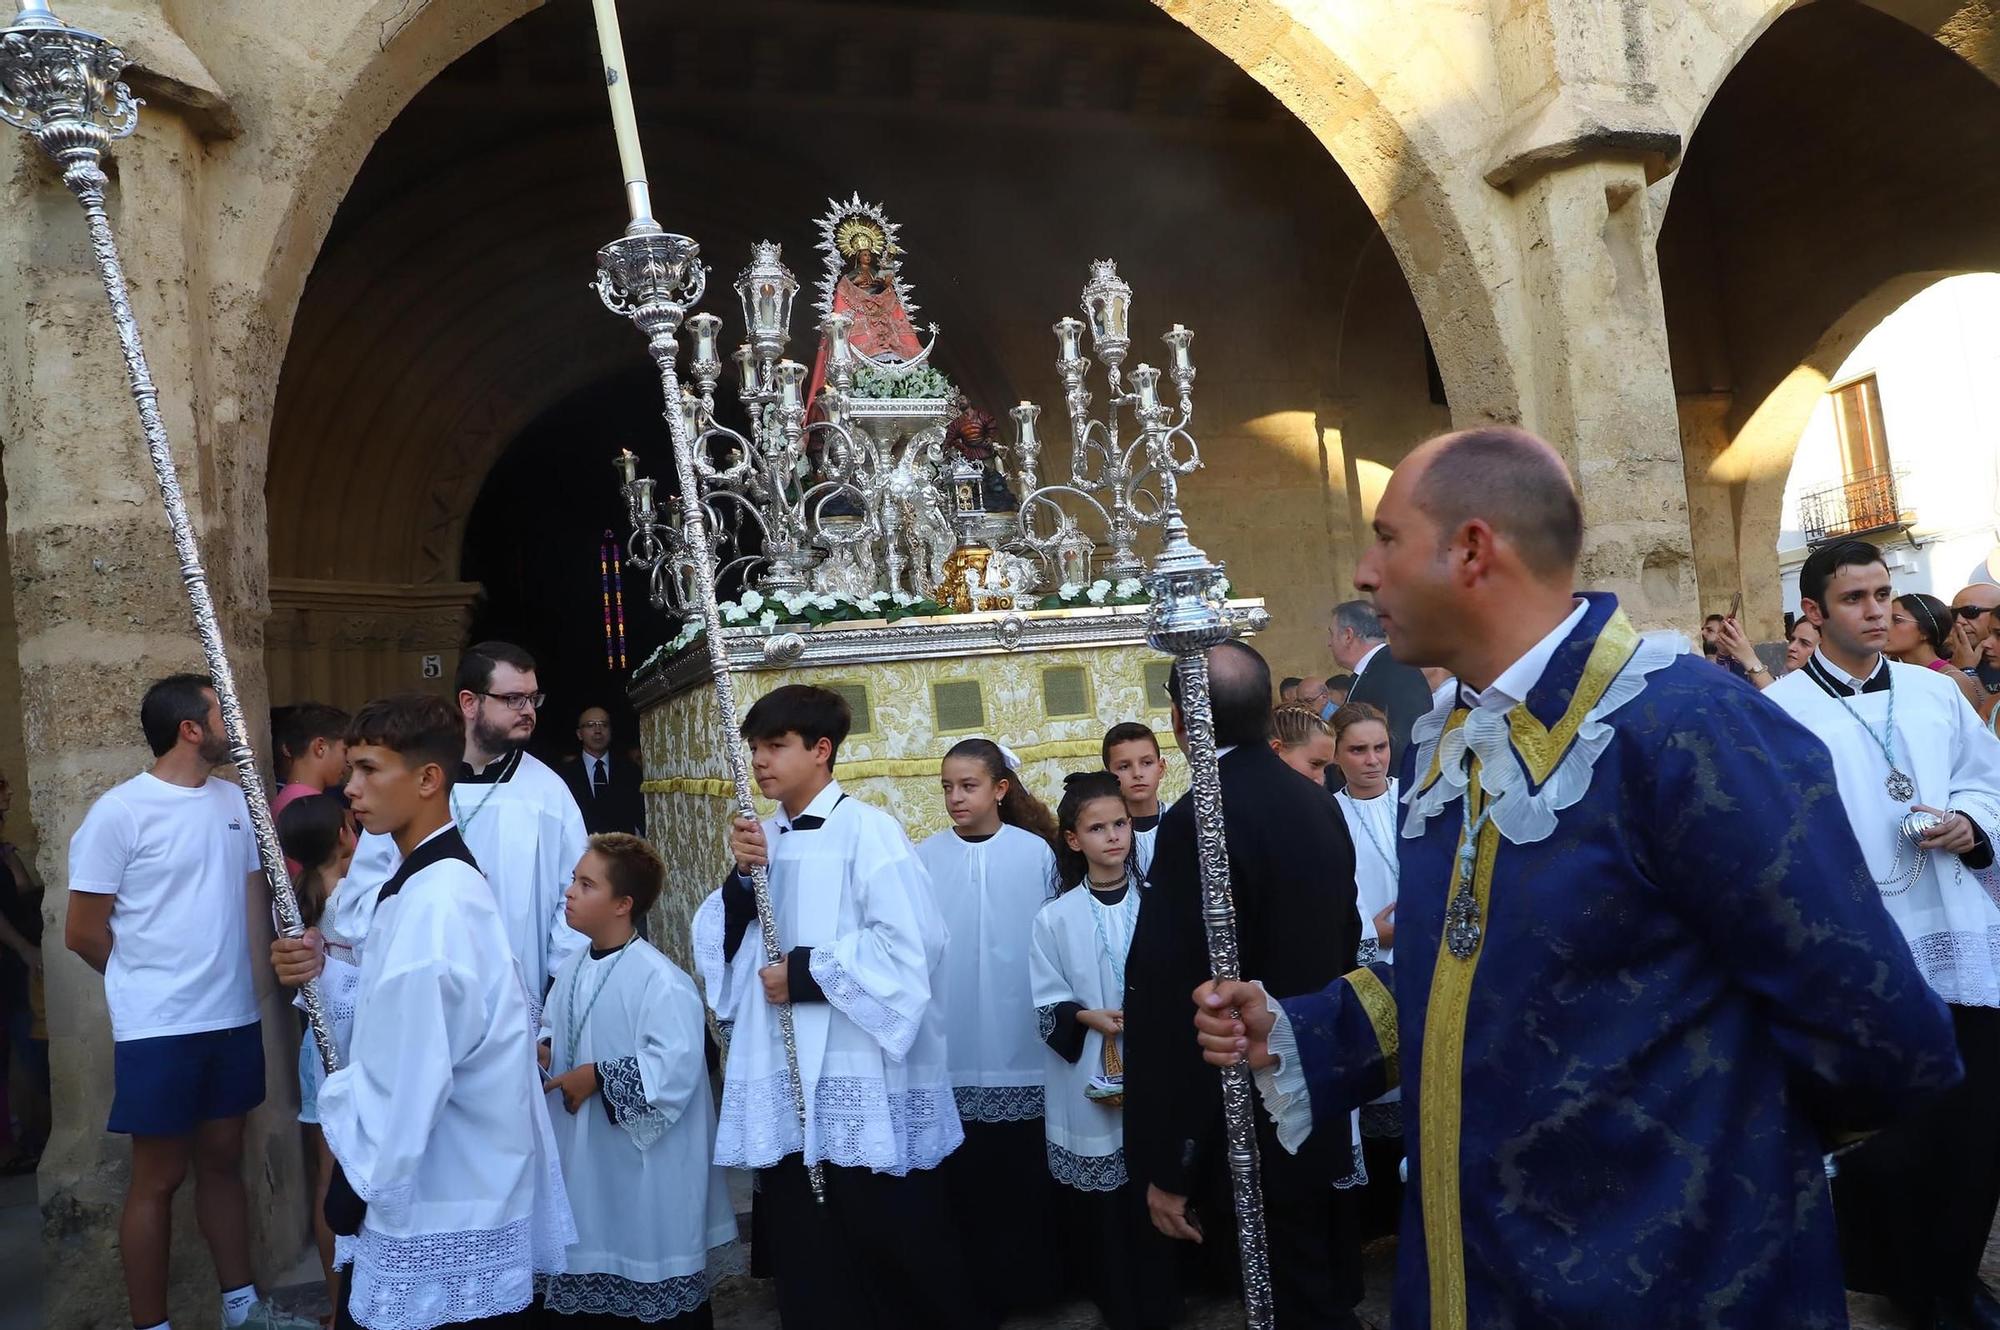 La procesión de la Virgen de Villaviciosa en imágenes